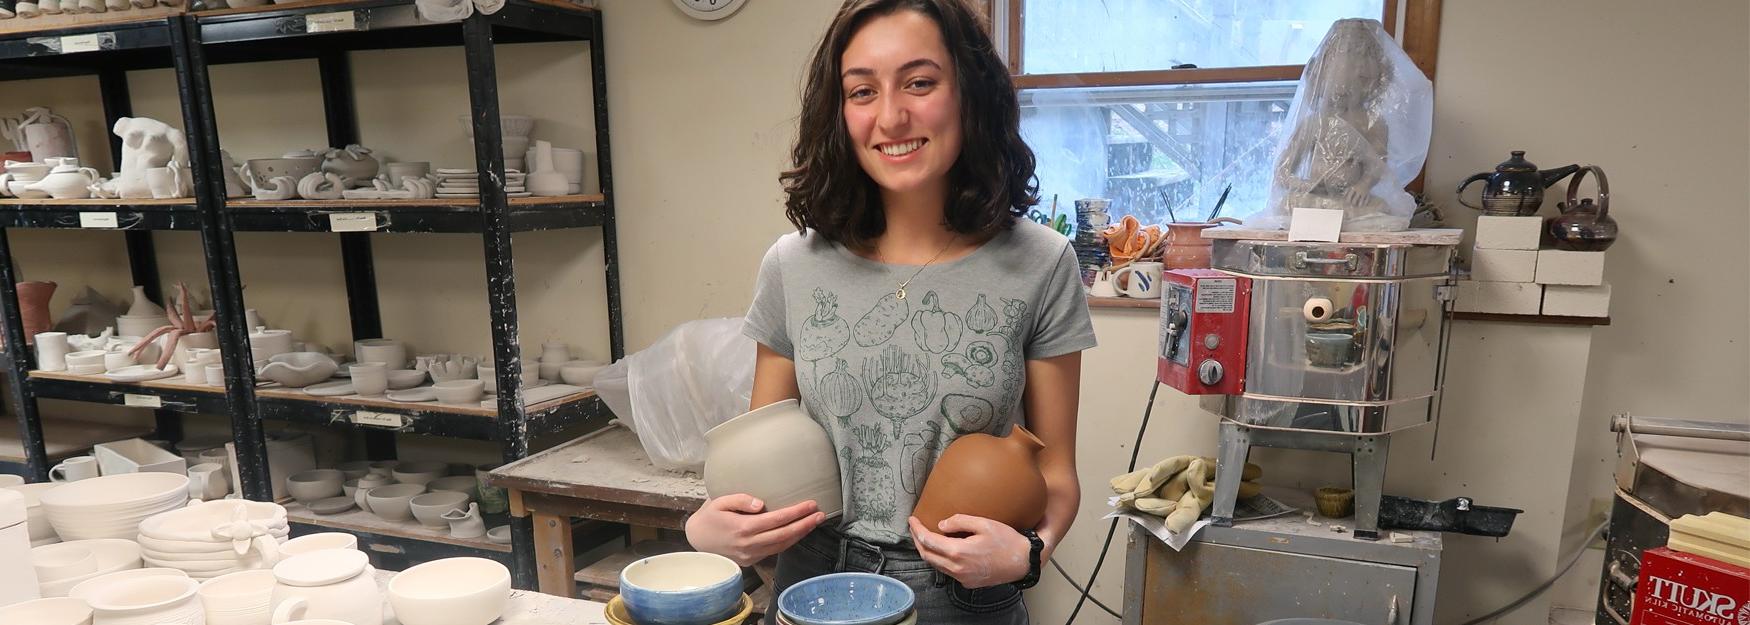 奥利维亚·斯科特站在镜头前微笑着，手里拿着她的手工陶瓷制品